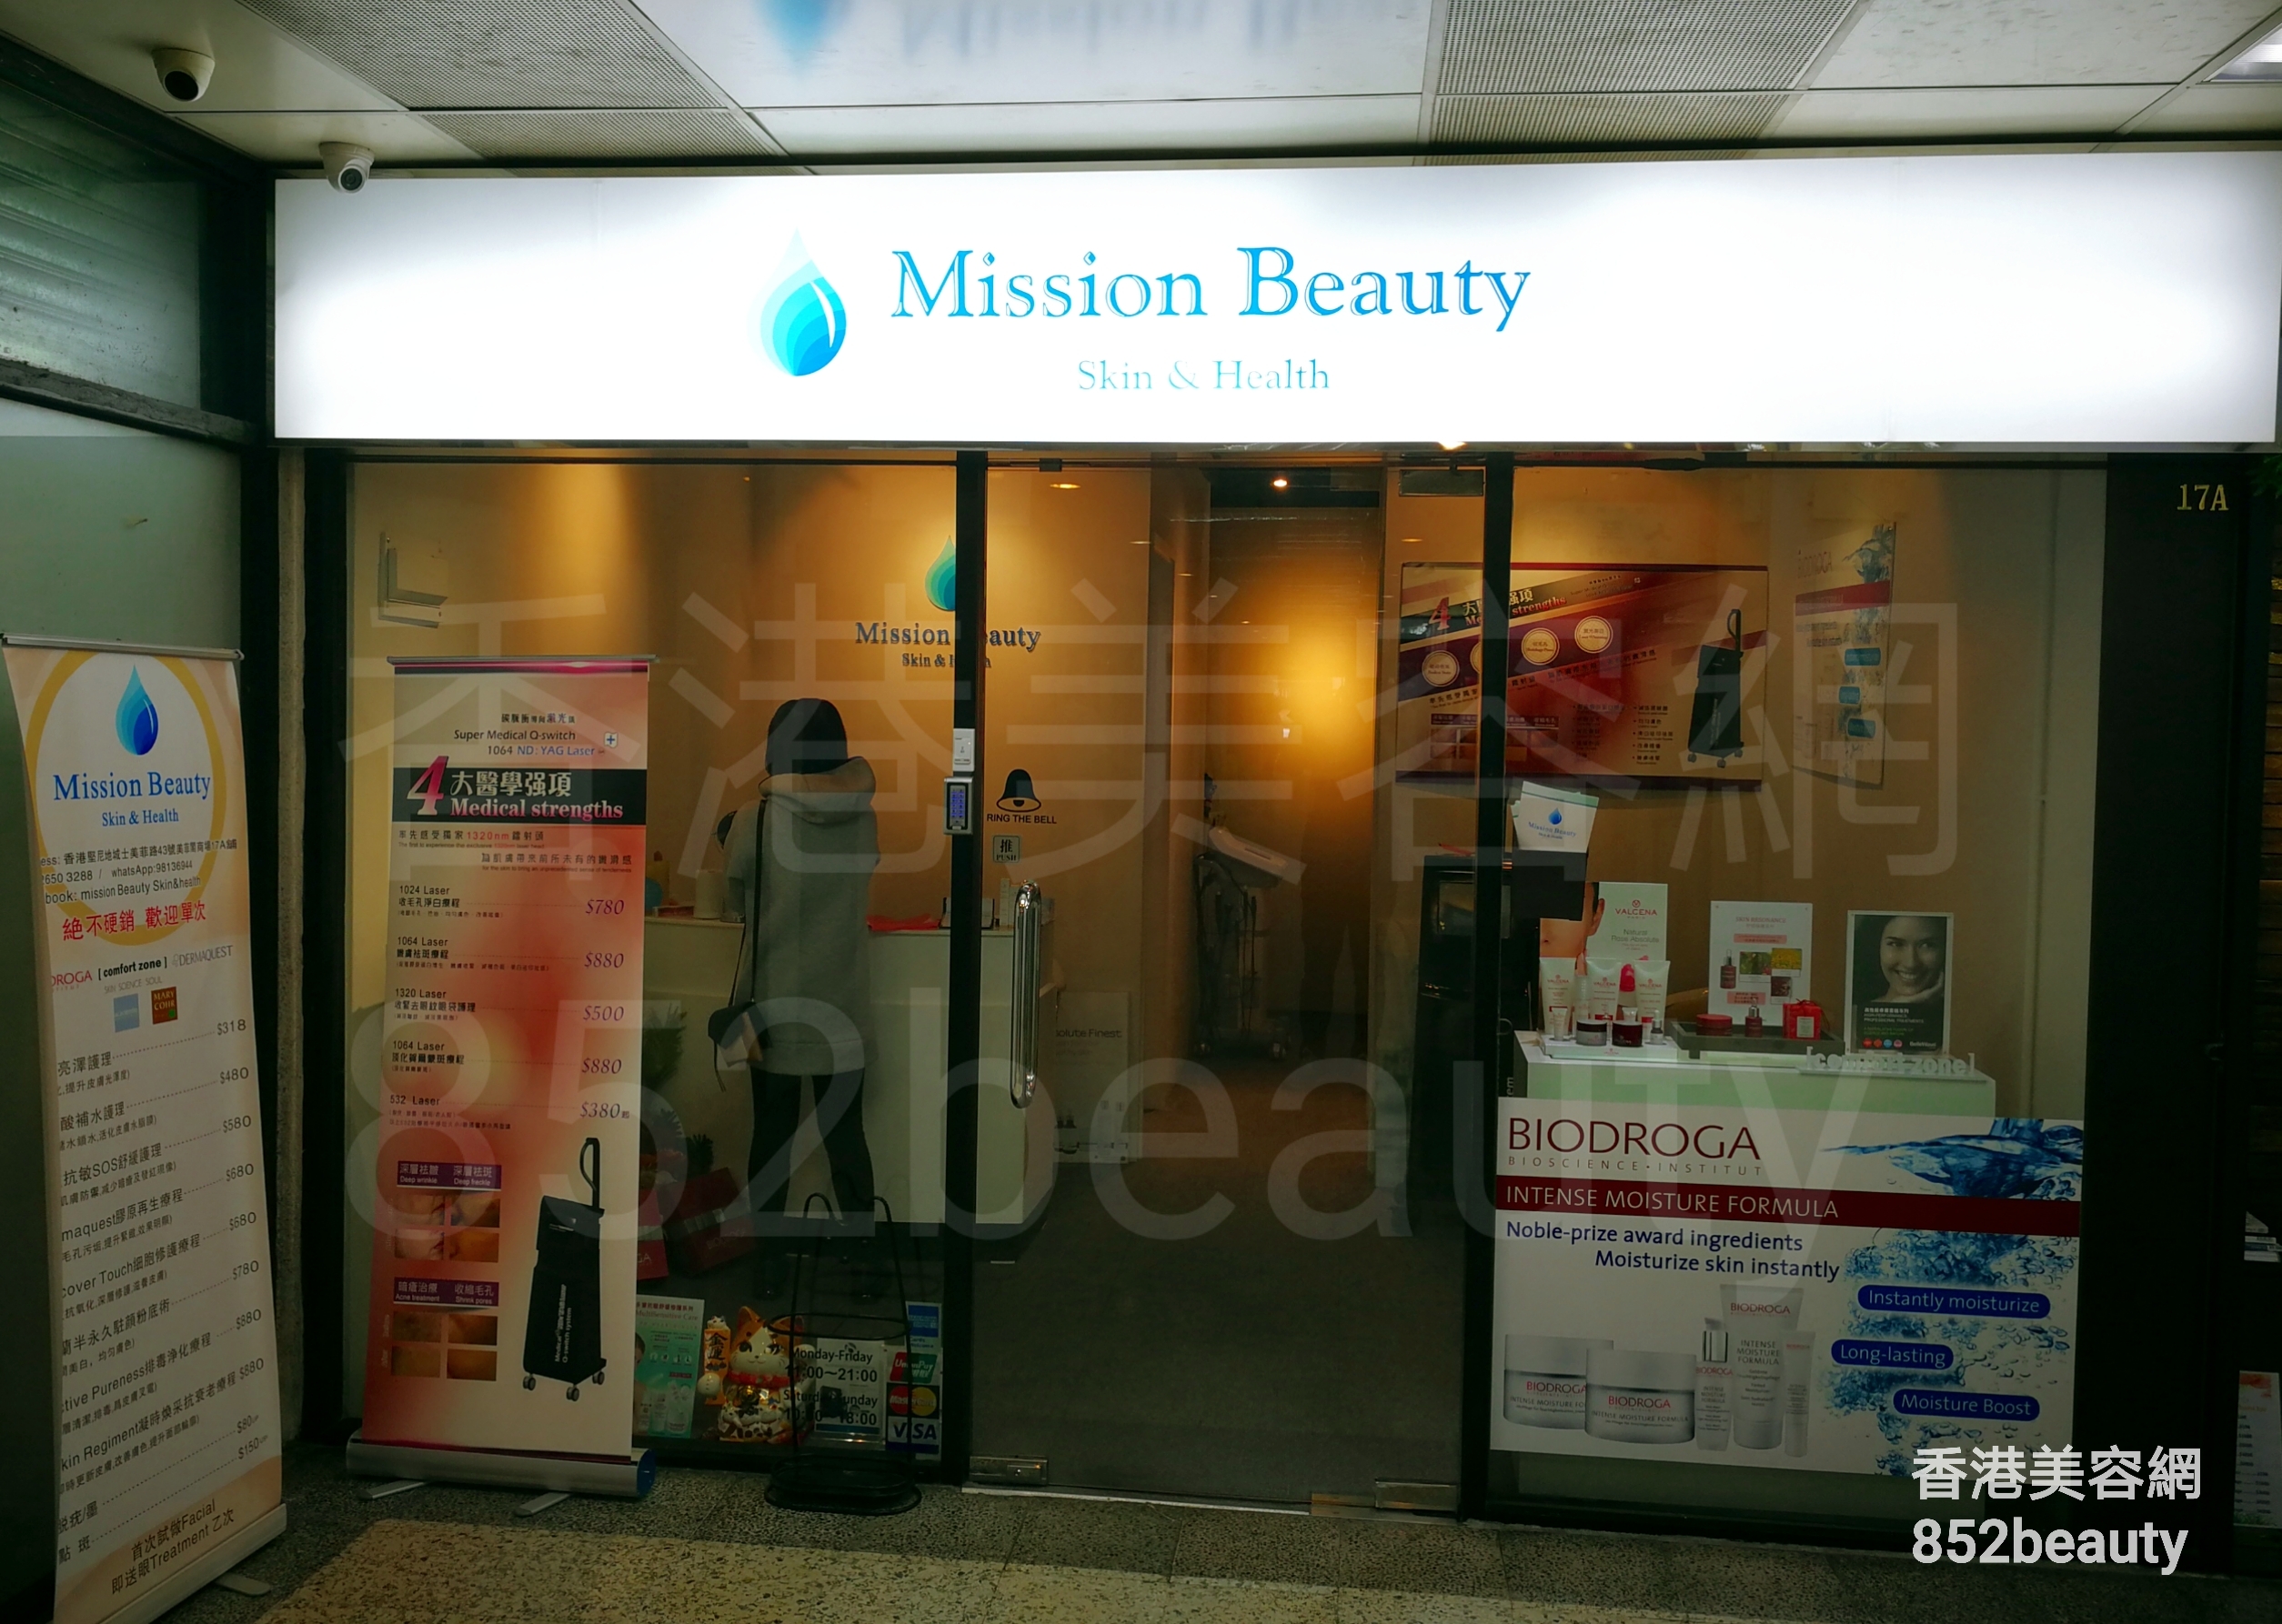 醫學美容: Mission Beauty